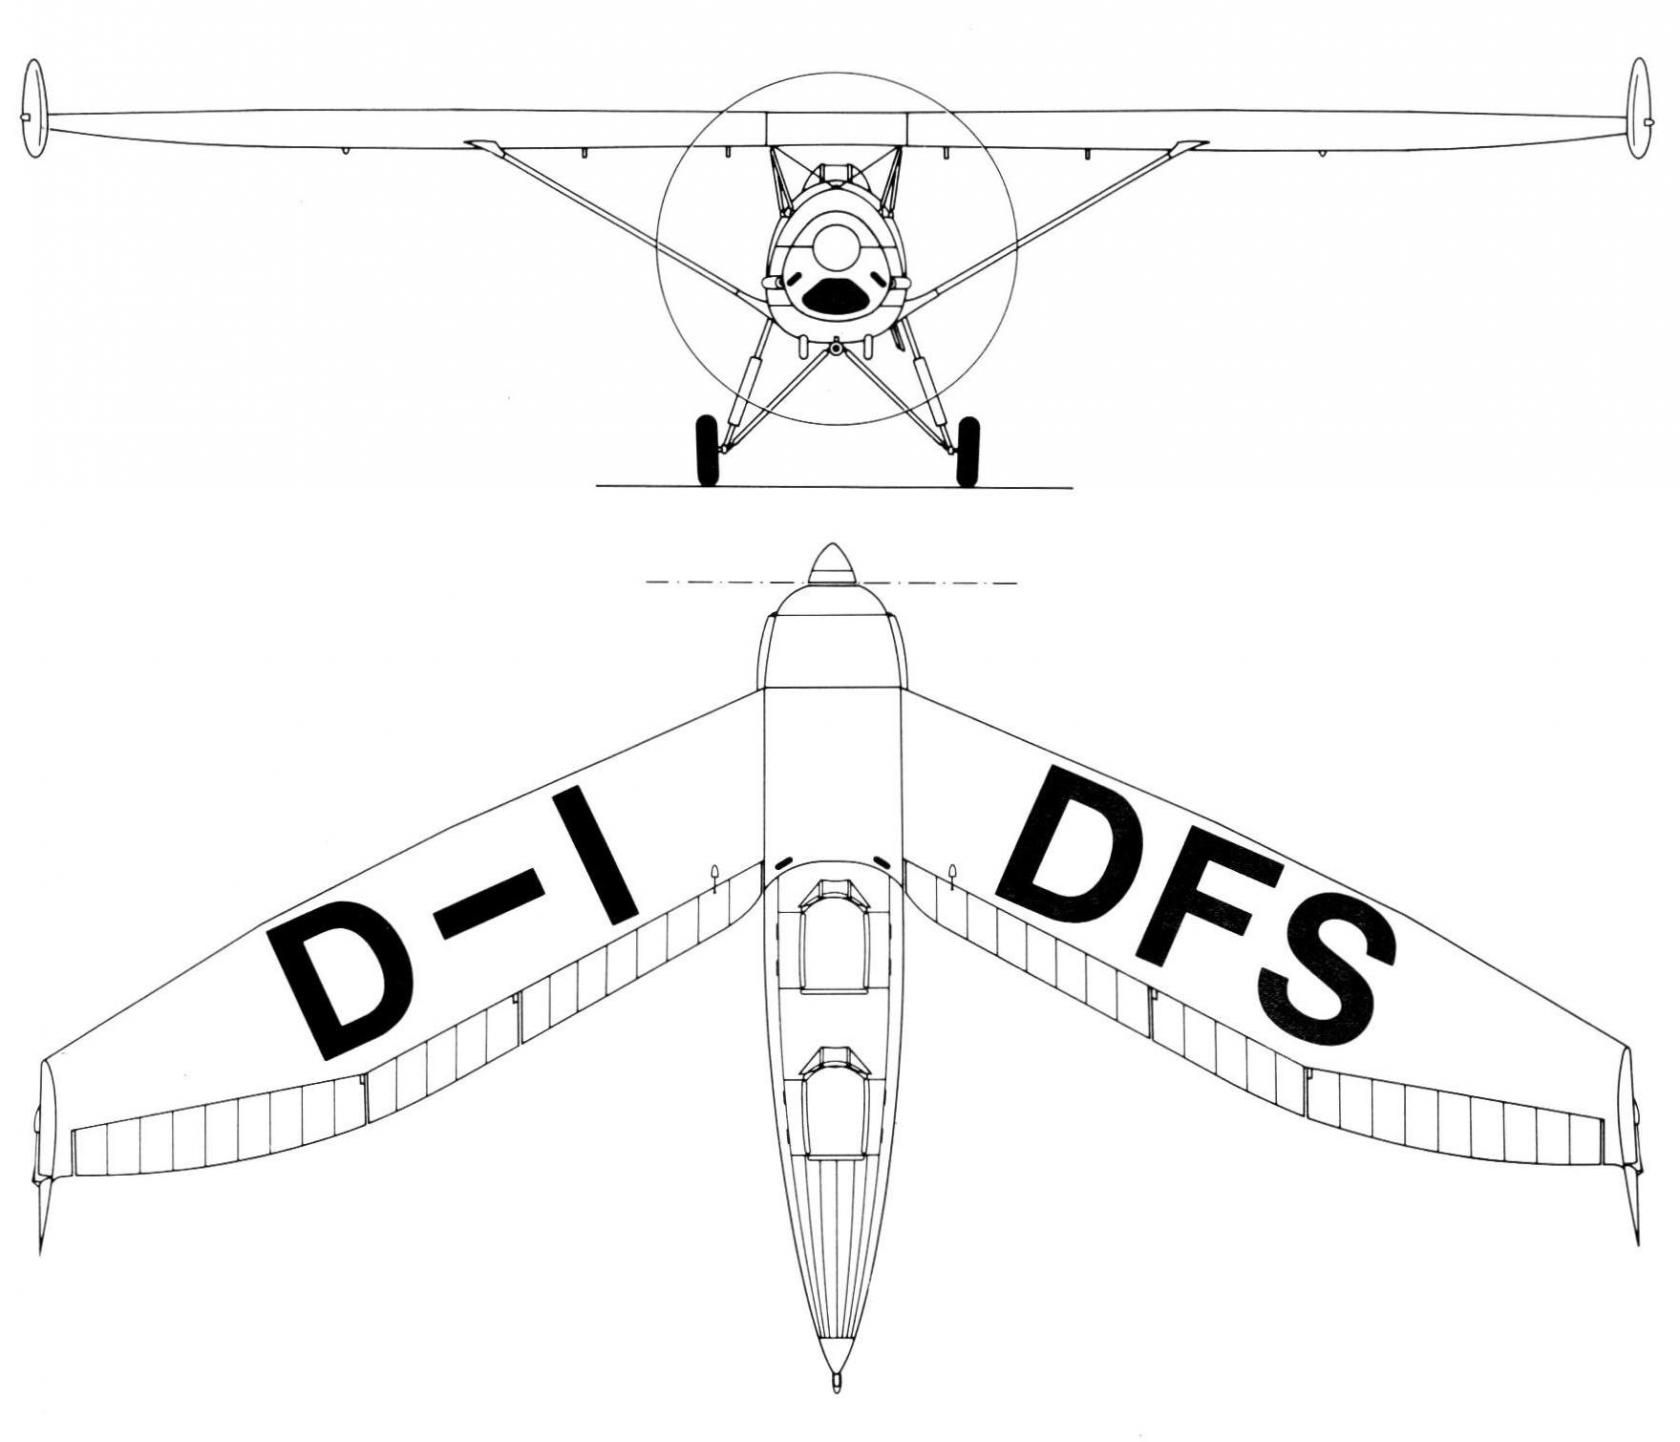 Опытный самолёт-бесхвостка DFS 193. Германия